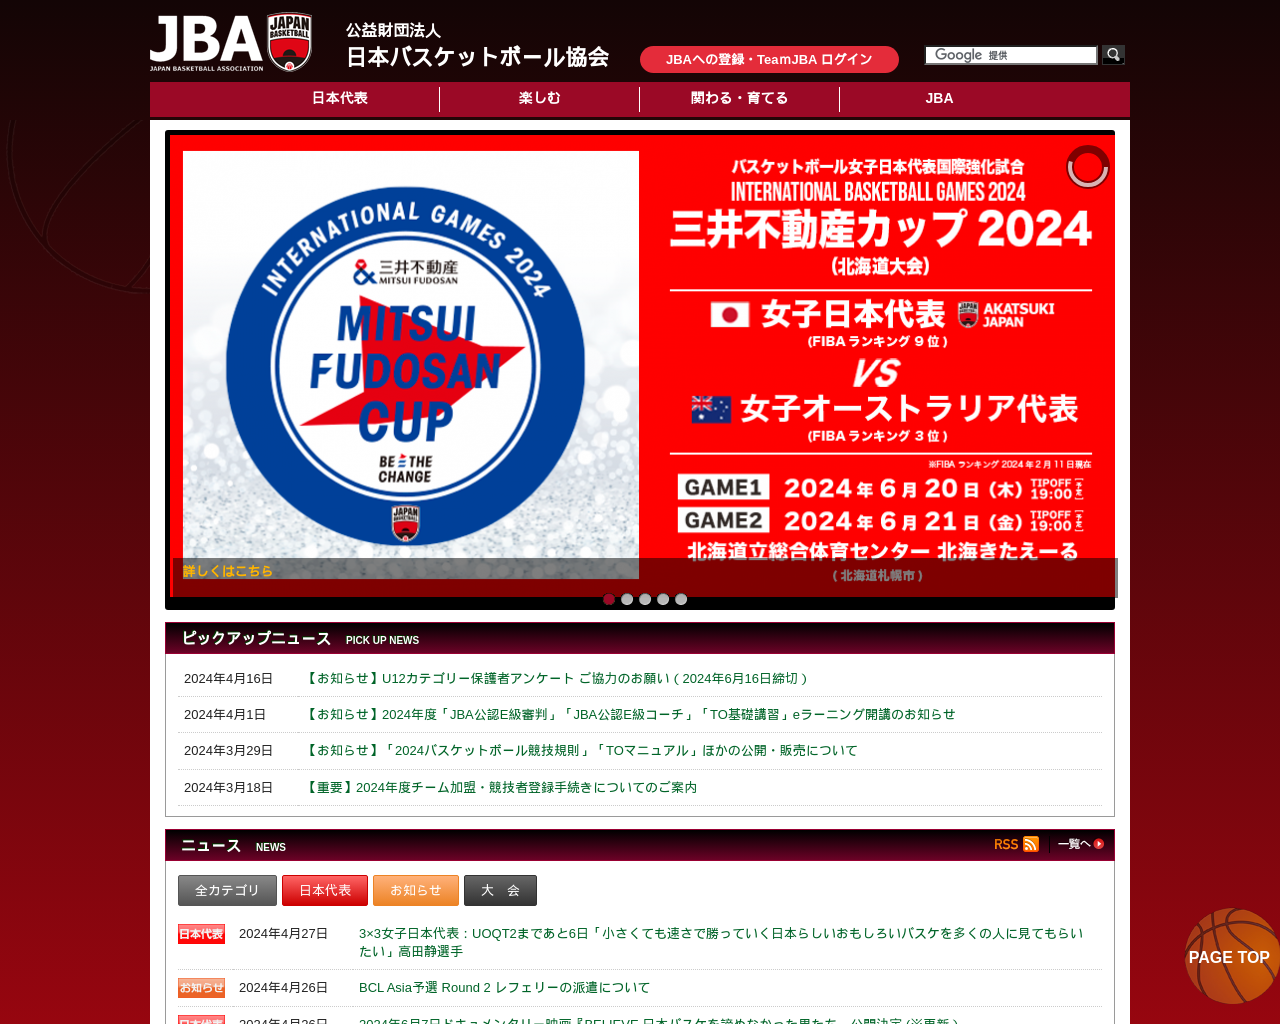 japanbasketball.jp